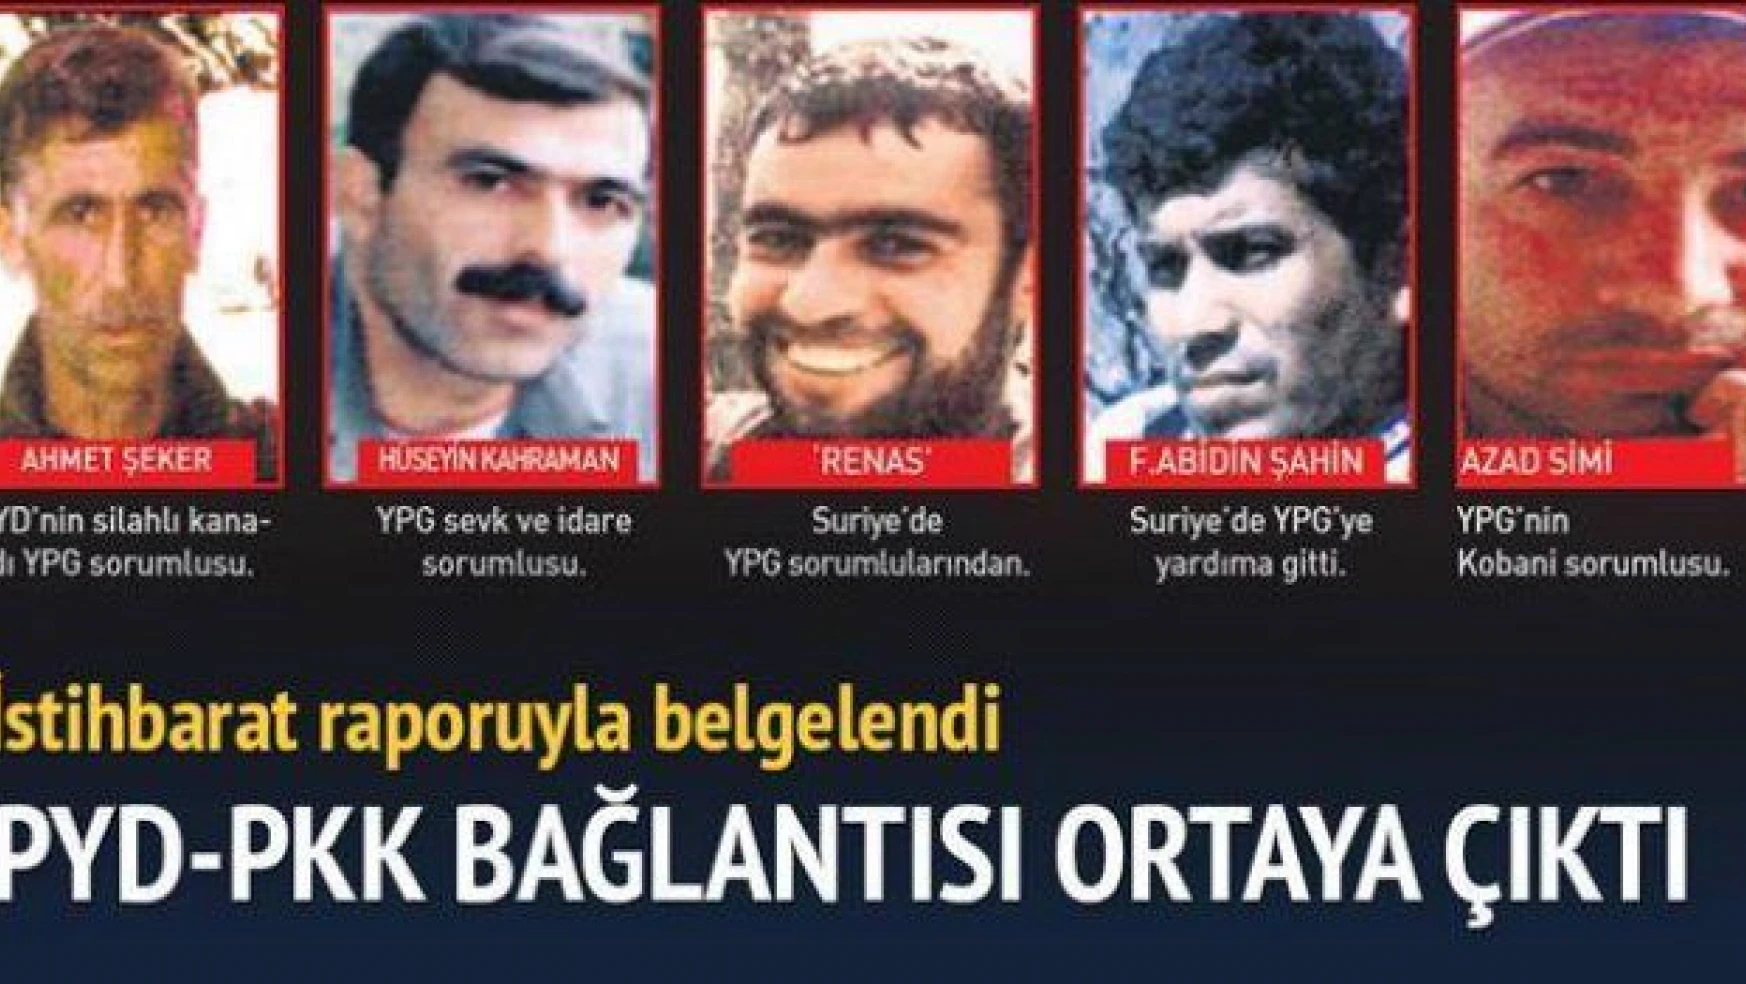 İşte istihbarat raporuyla PYD-PKK bağı